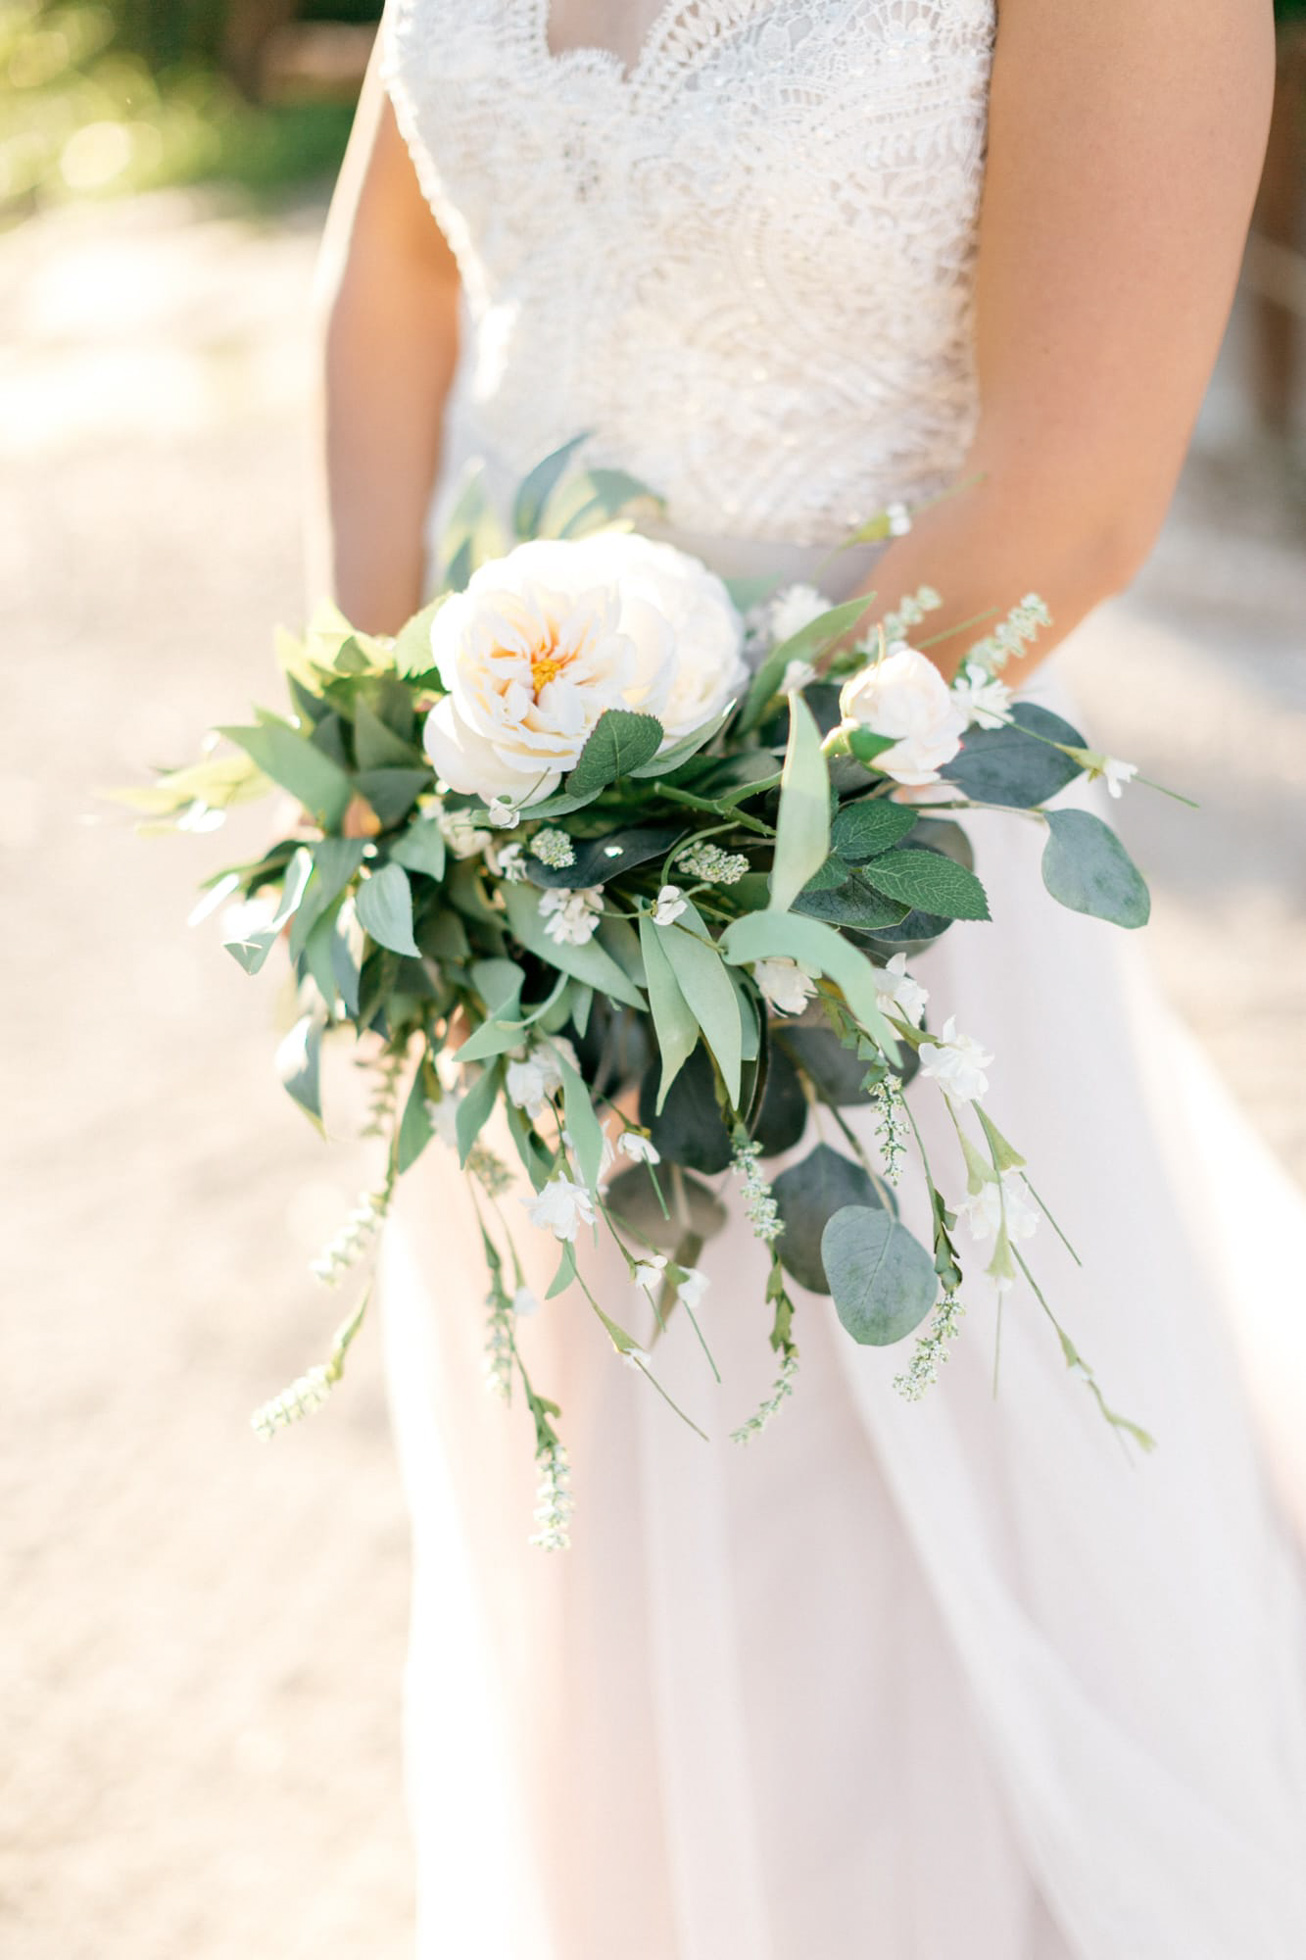 Bridal bouquet in Agreco Farms, Grecotel, Crete, Greece.